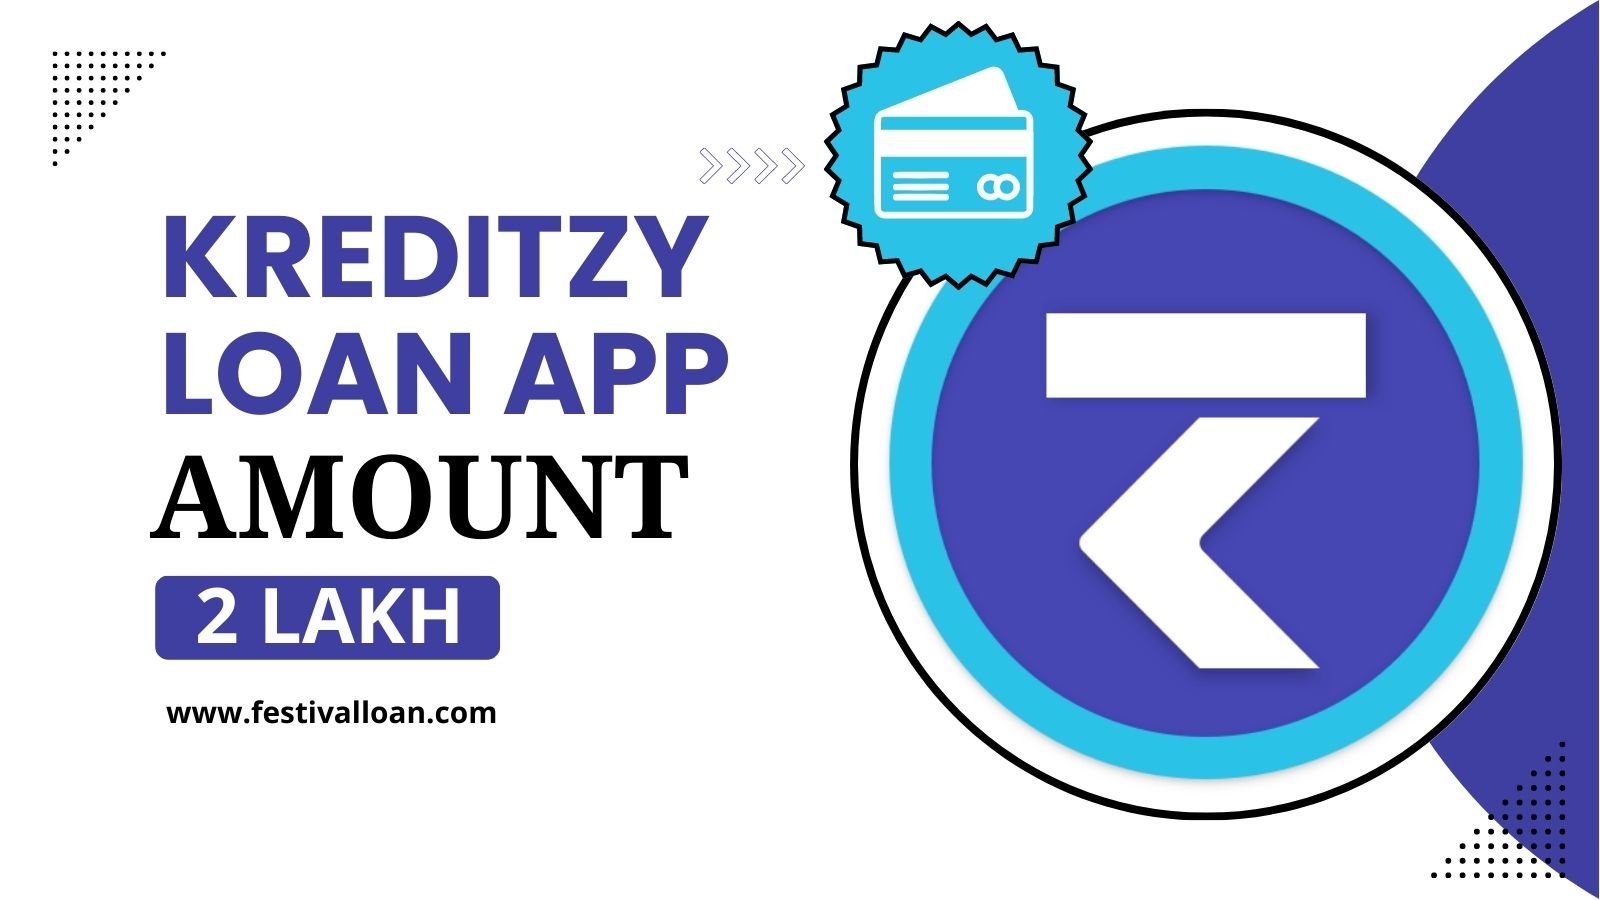 Kreditzy Loan App से आपको कितना लोन मिलेगा?